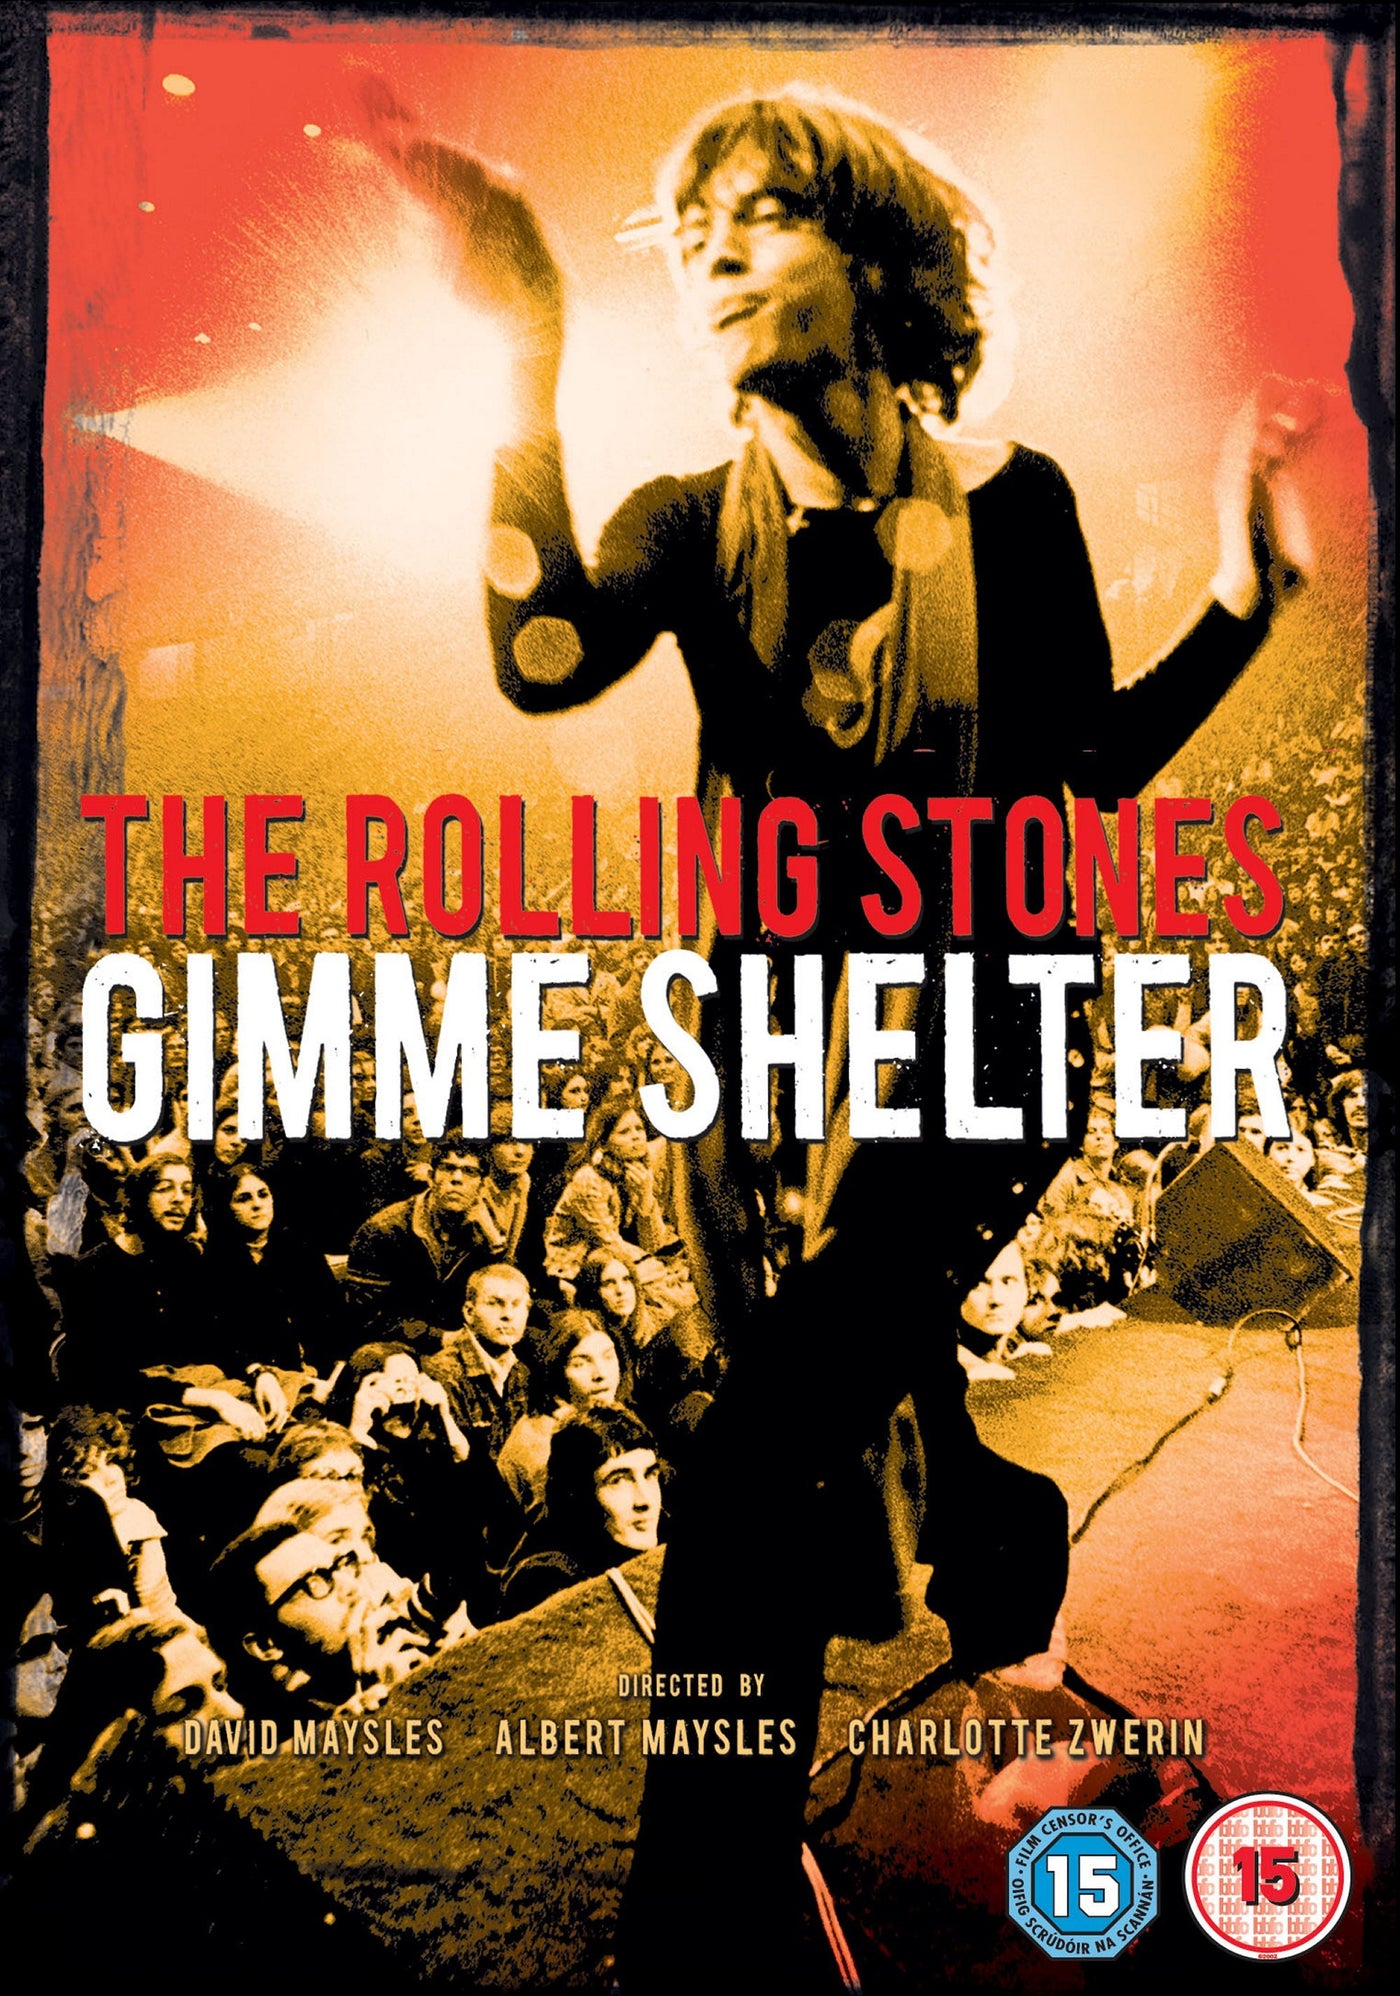 Gimme Shelter [2009] (DVD)